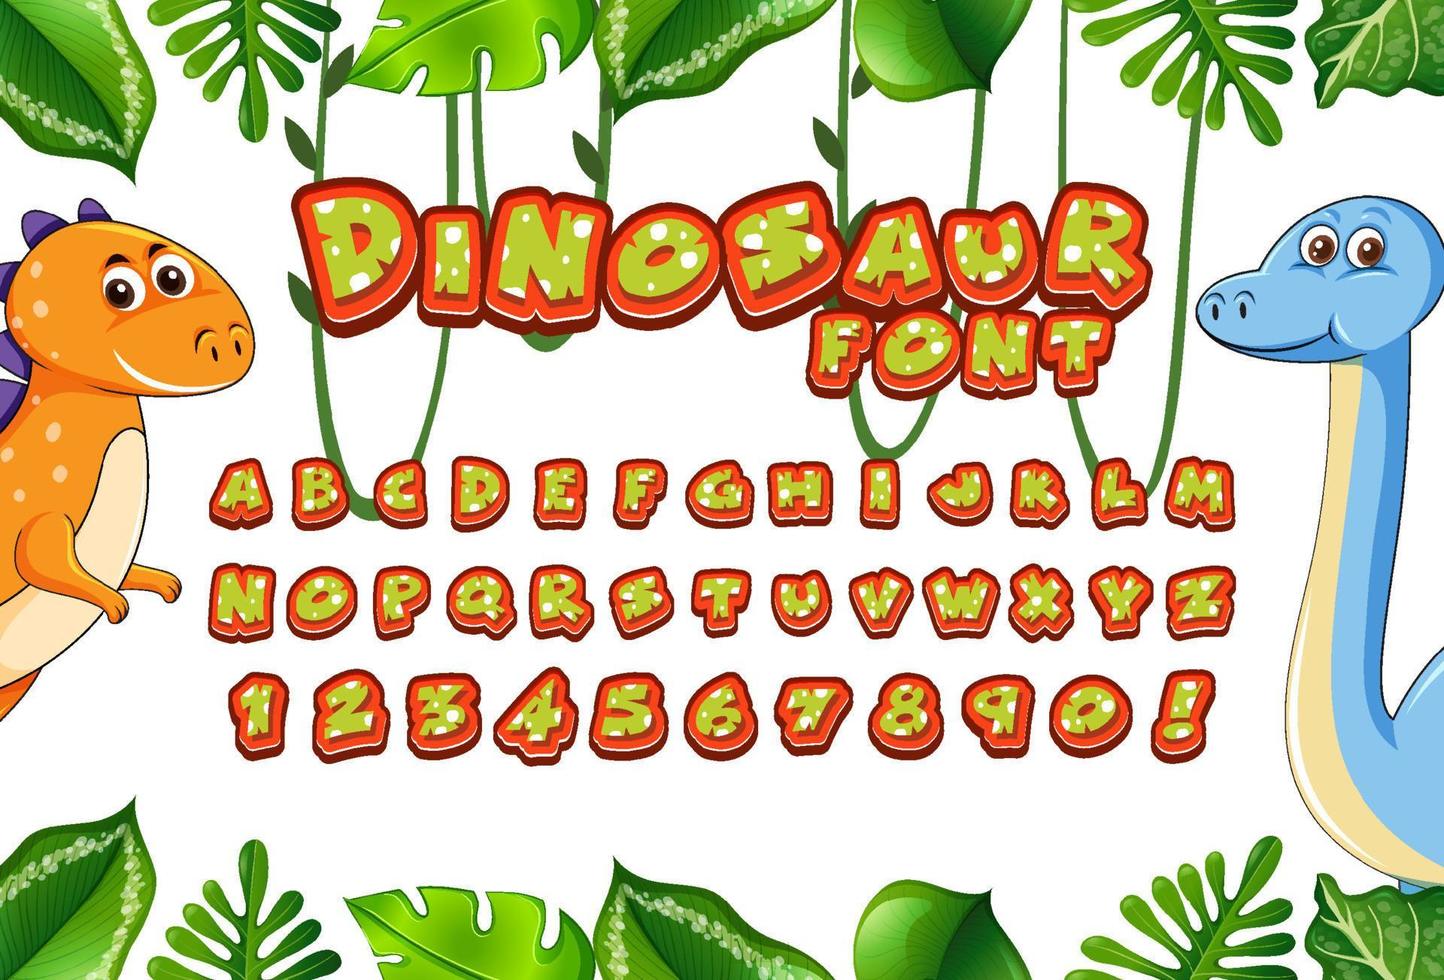 schriftdesign für englische alphabete im dinosauriercharakter mit dschungel vektor